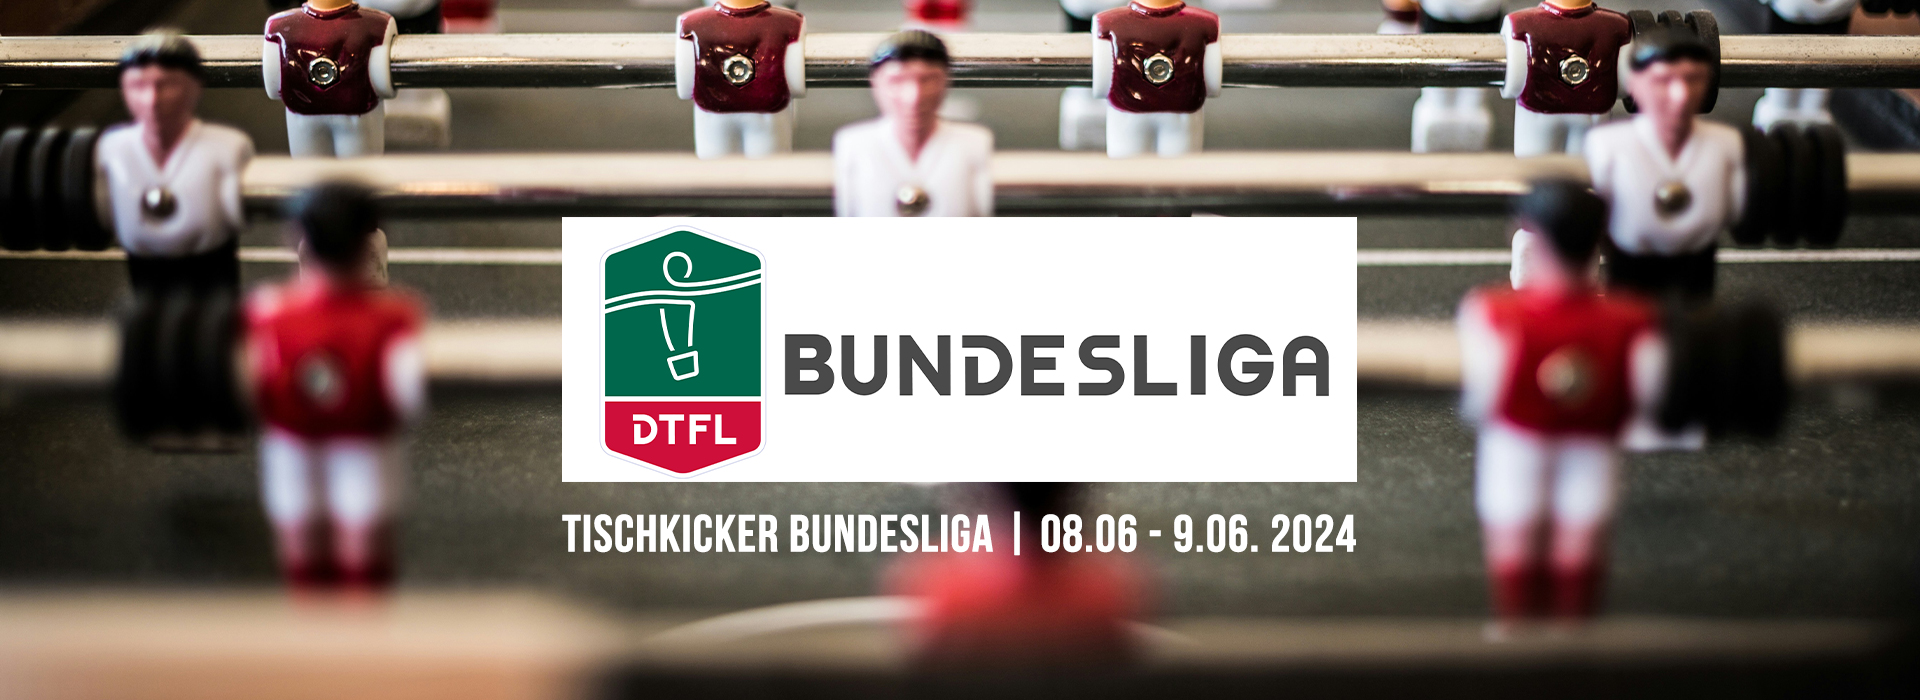 Tischkicker Bundesliga